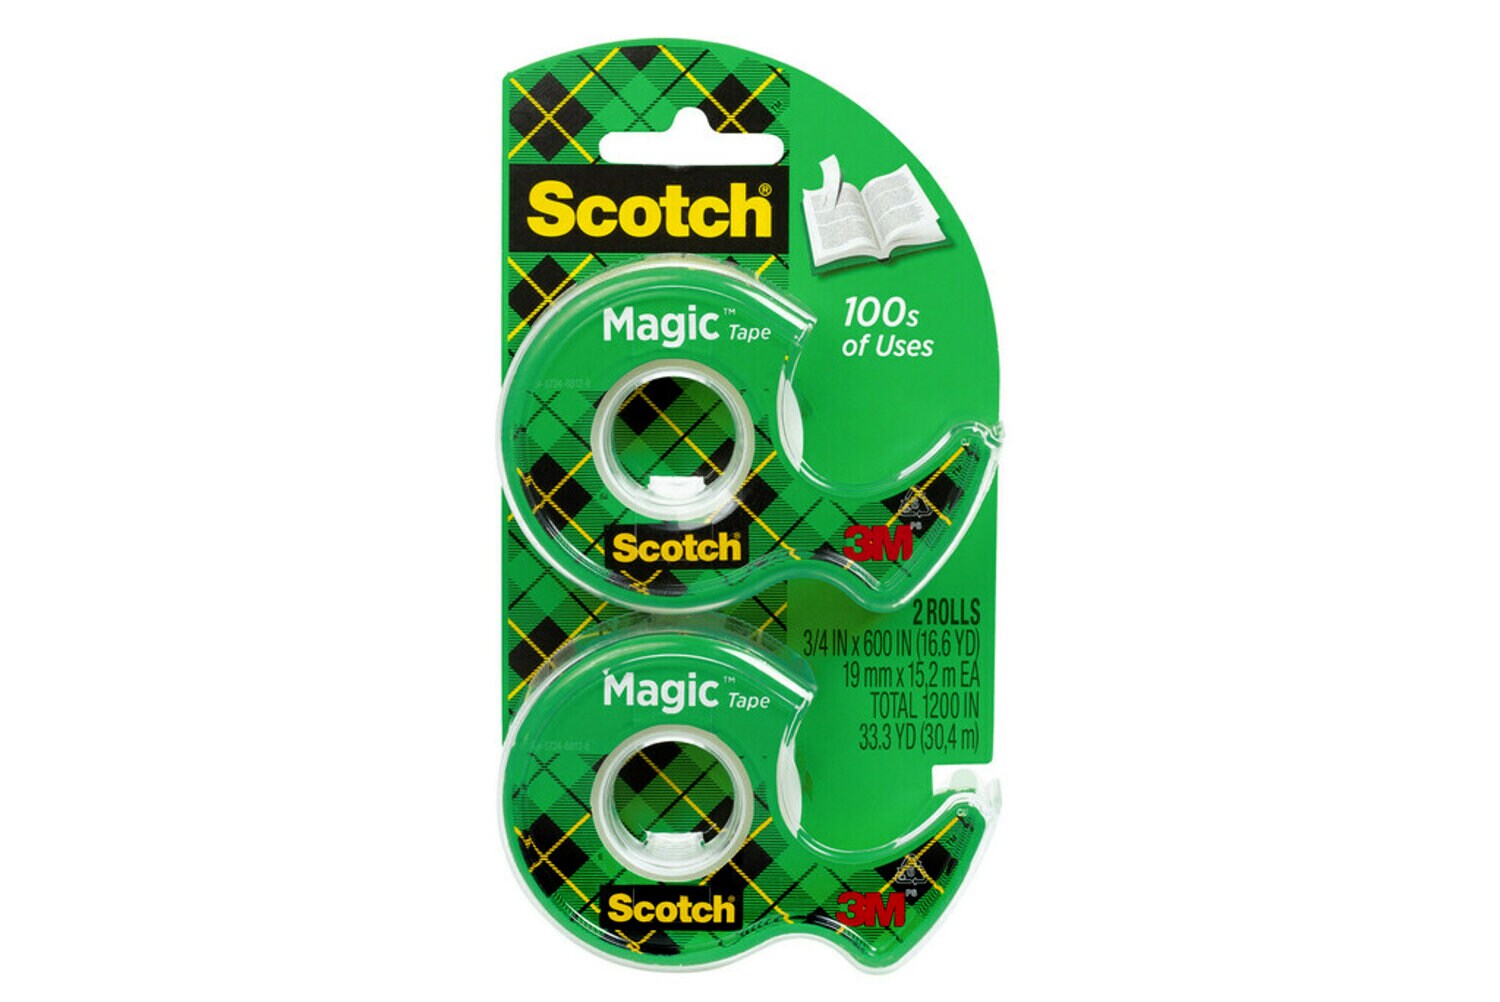 7010369984 - Scotch Magic Tape 122DM-2, 3/4 in x 600 in 2 Pack